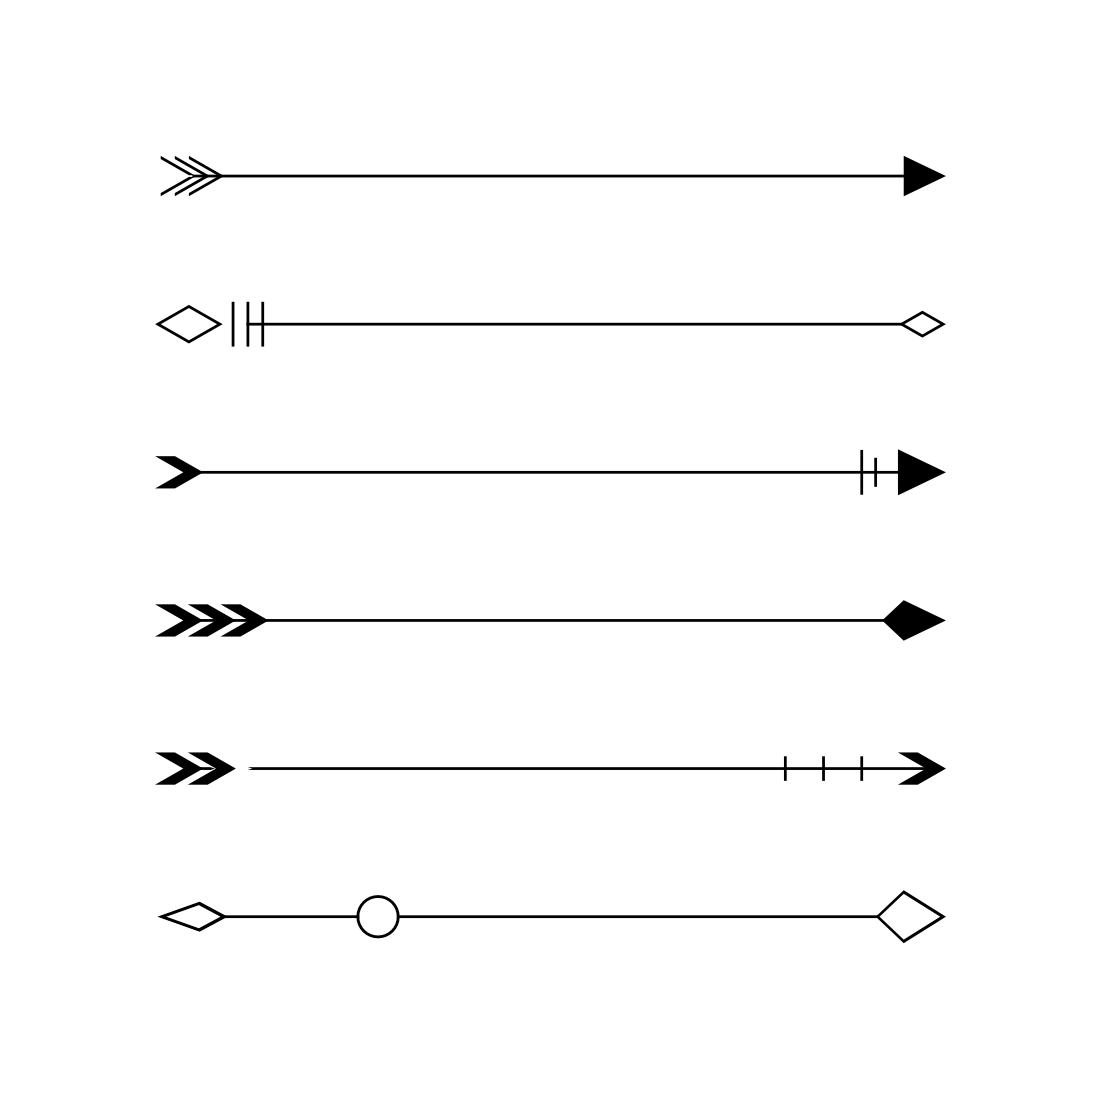 simple arrow tattoo